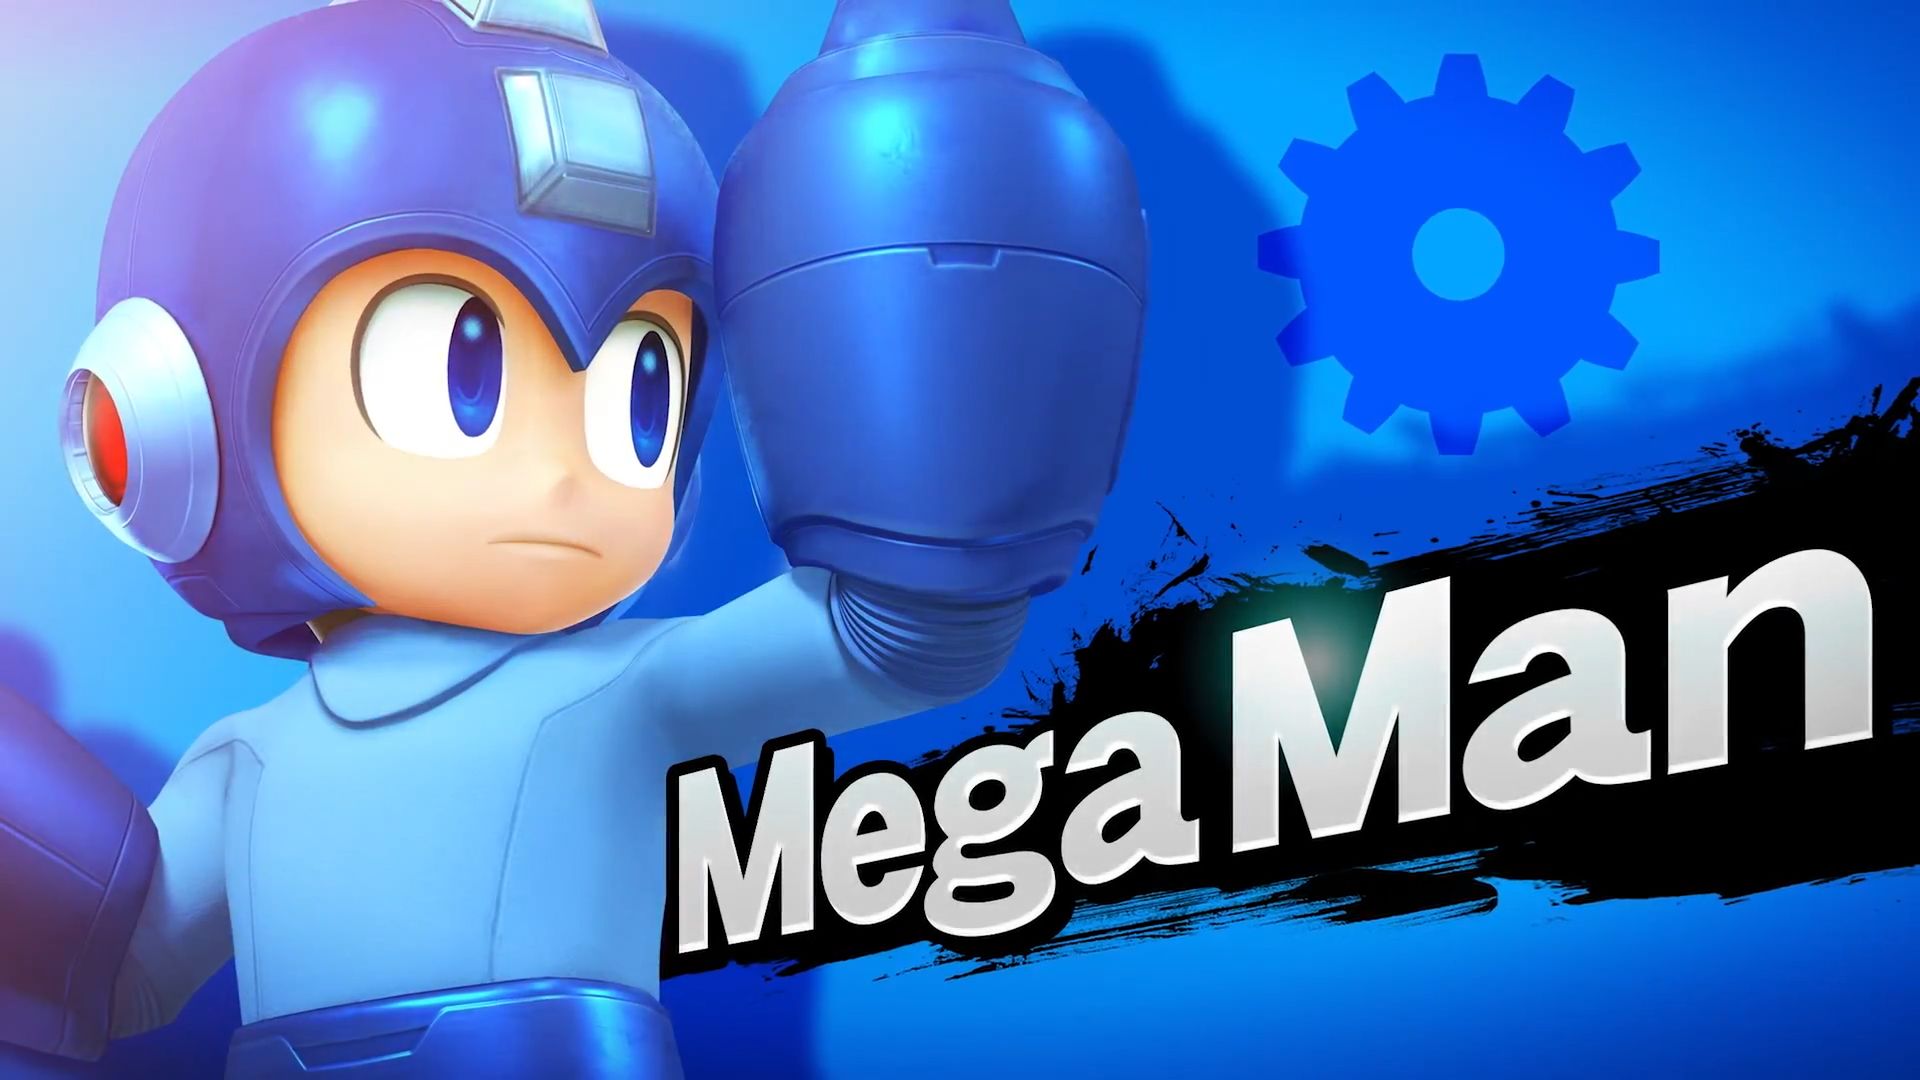 Download mobile wallpaper Mega Man, Super Smash Bros For Nintendo 3Ds And Wii U, Super Smash Bros, Video Game for free.